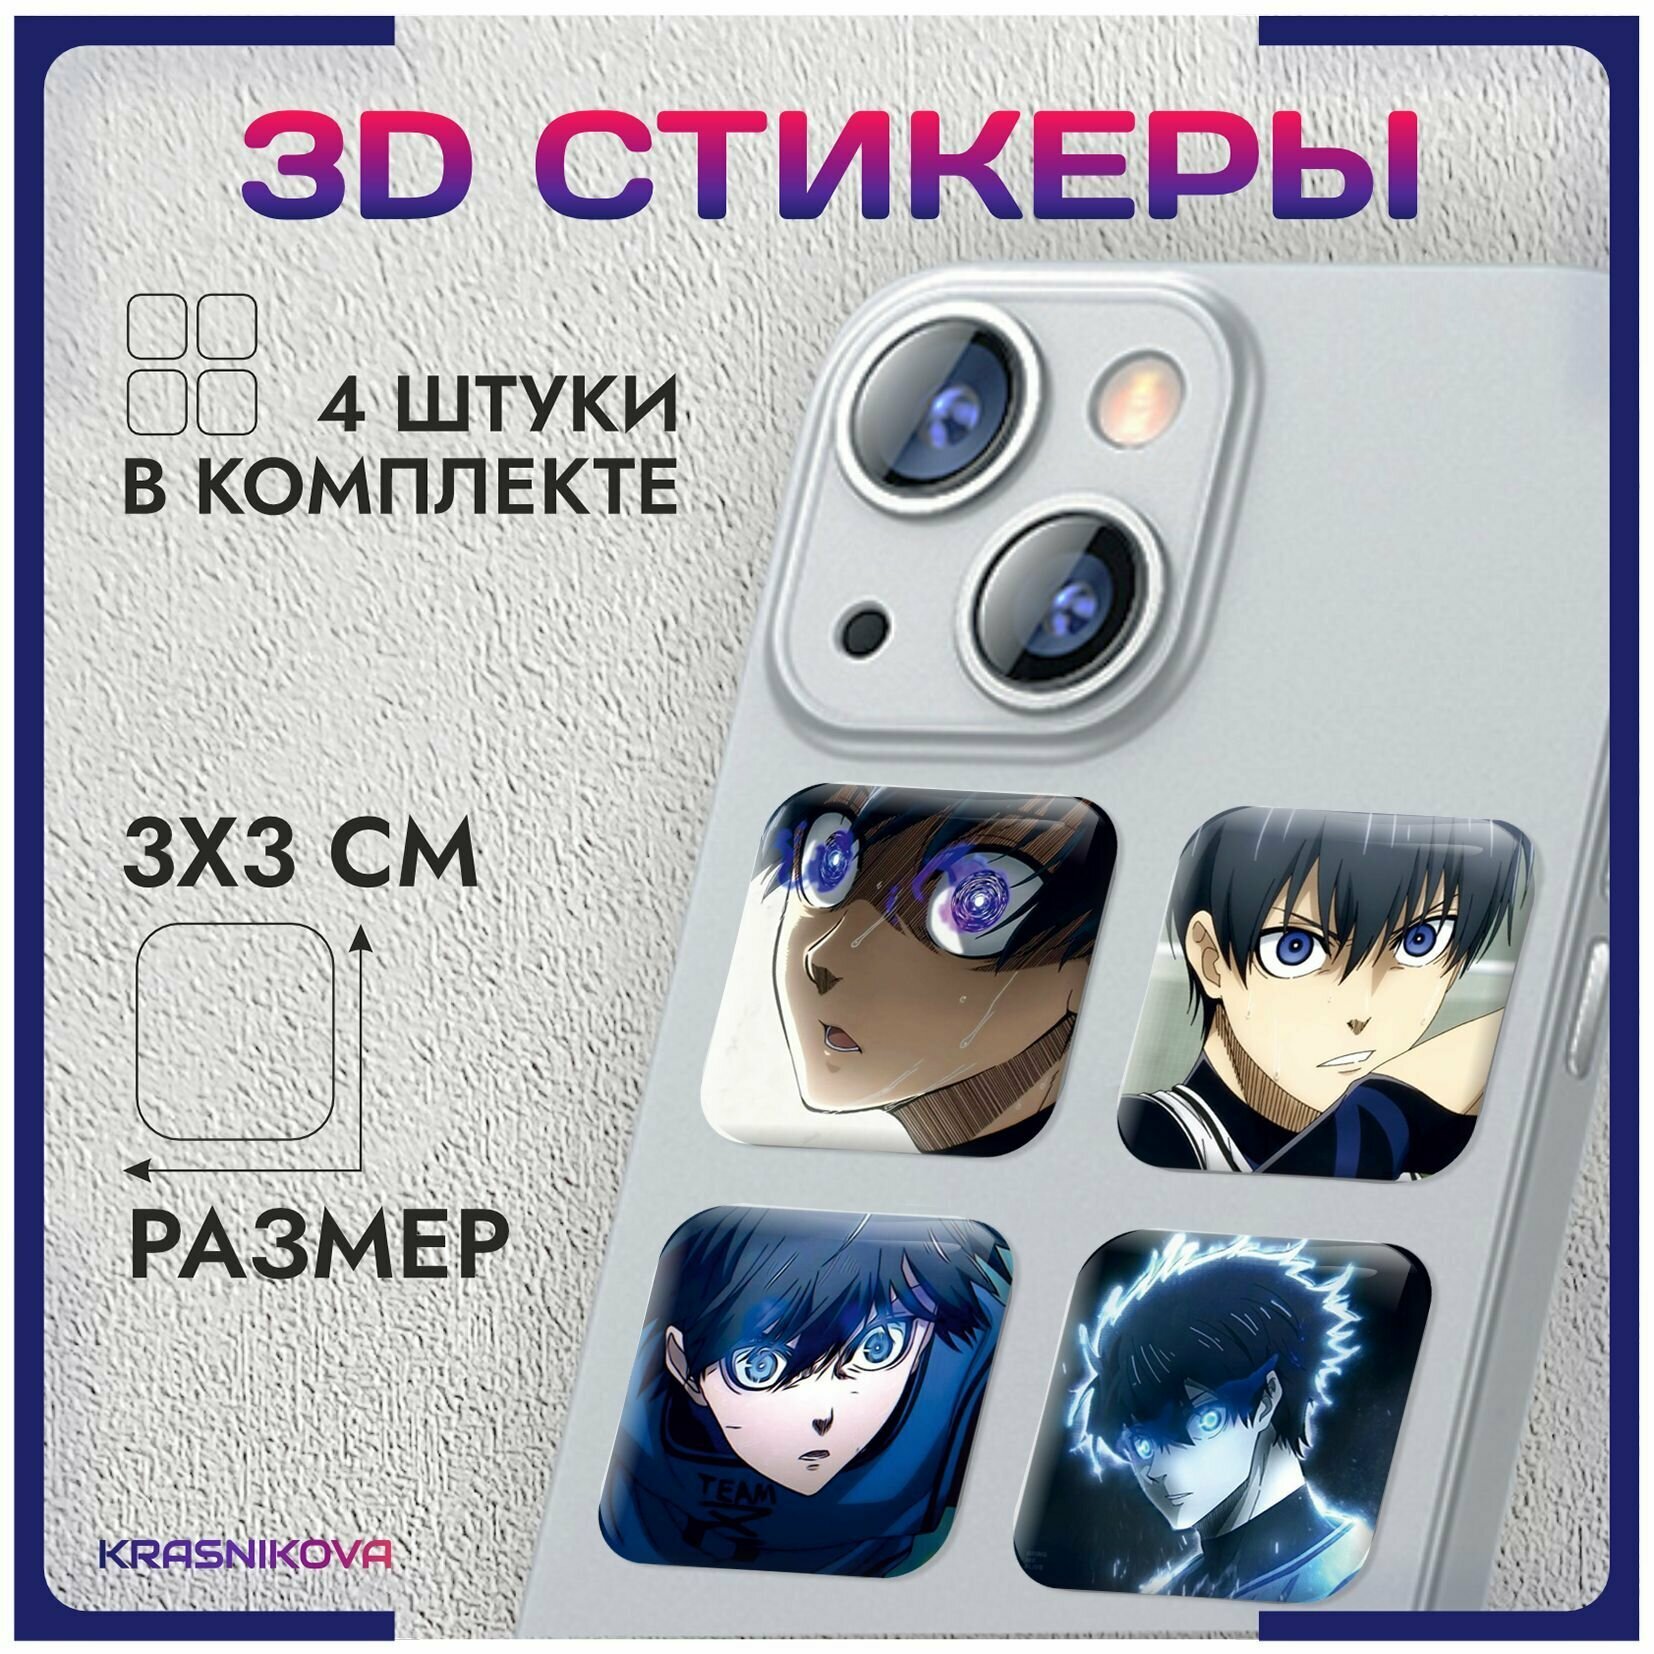 3D стикеры на телефон объемные аниме синяя тюрьма блю лок v3